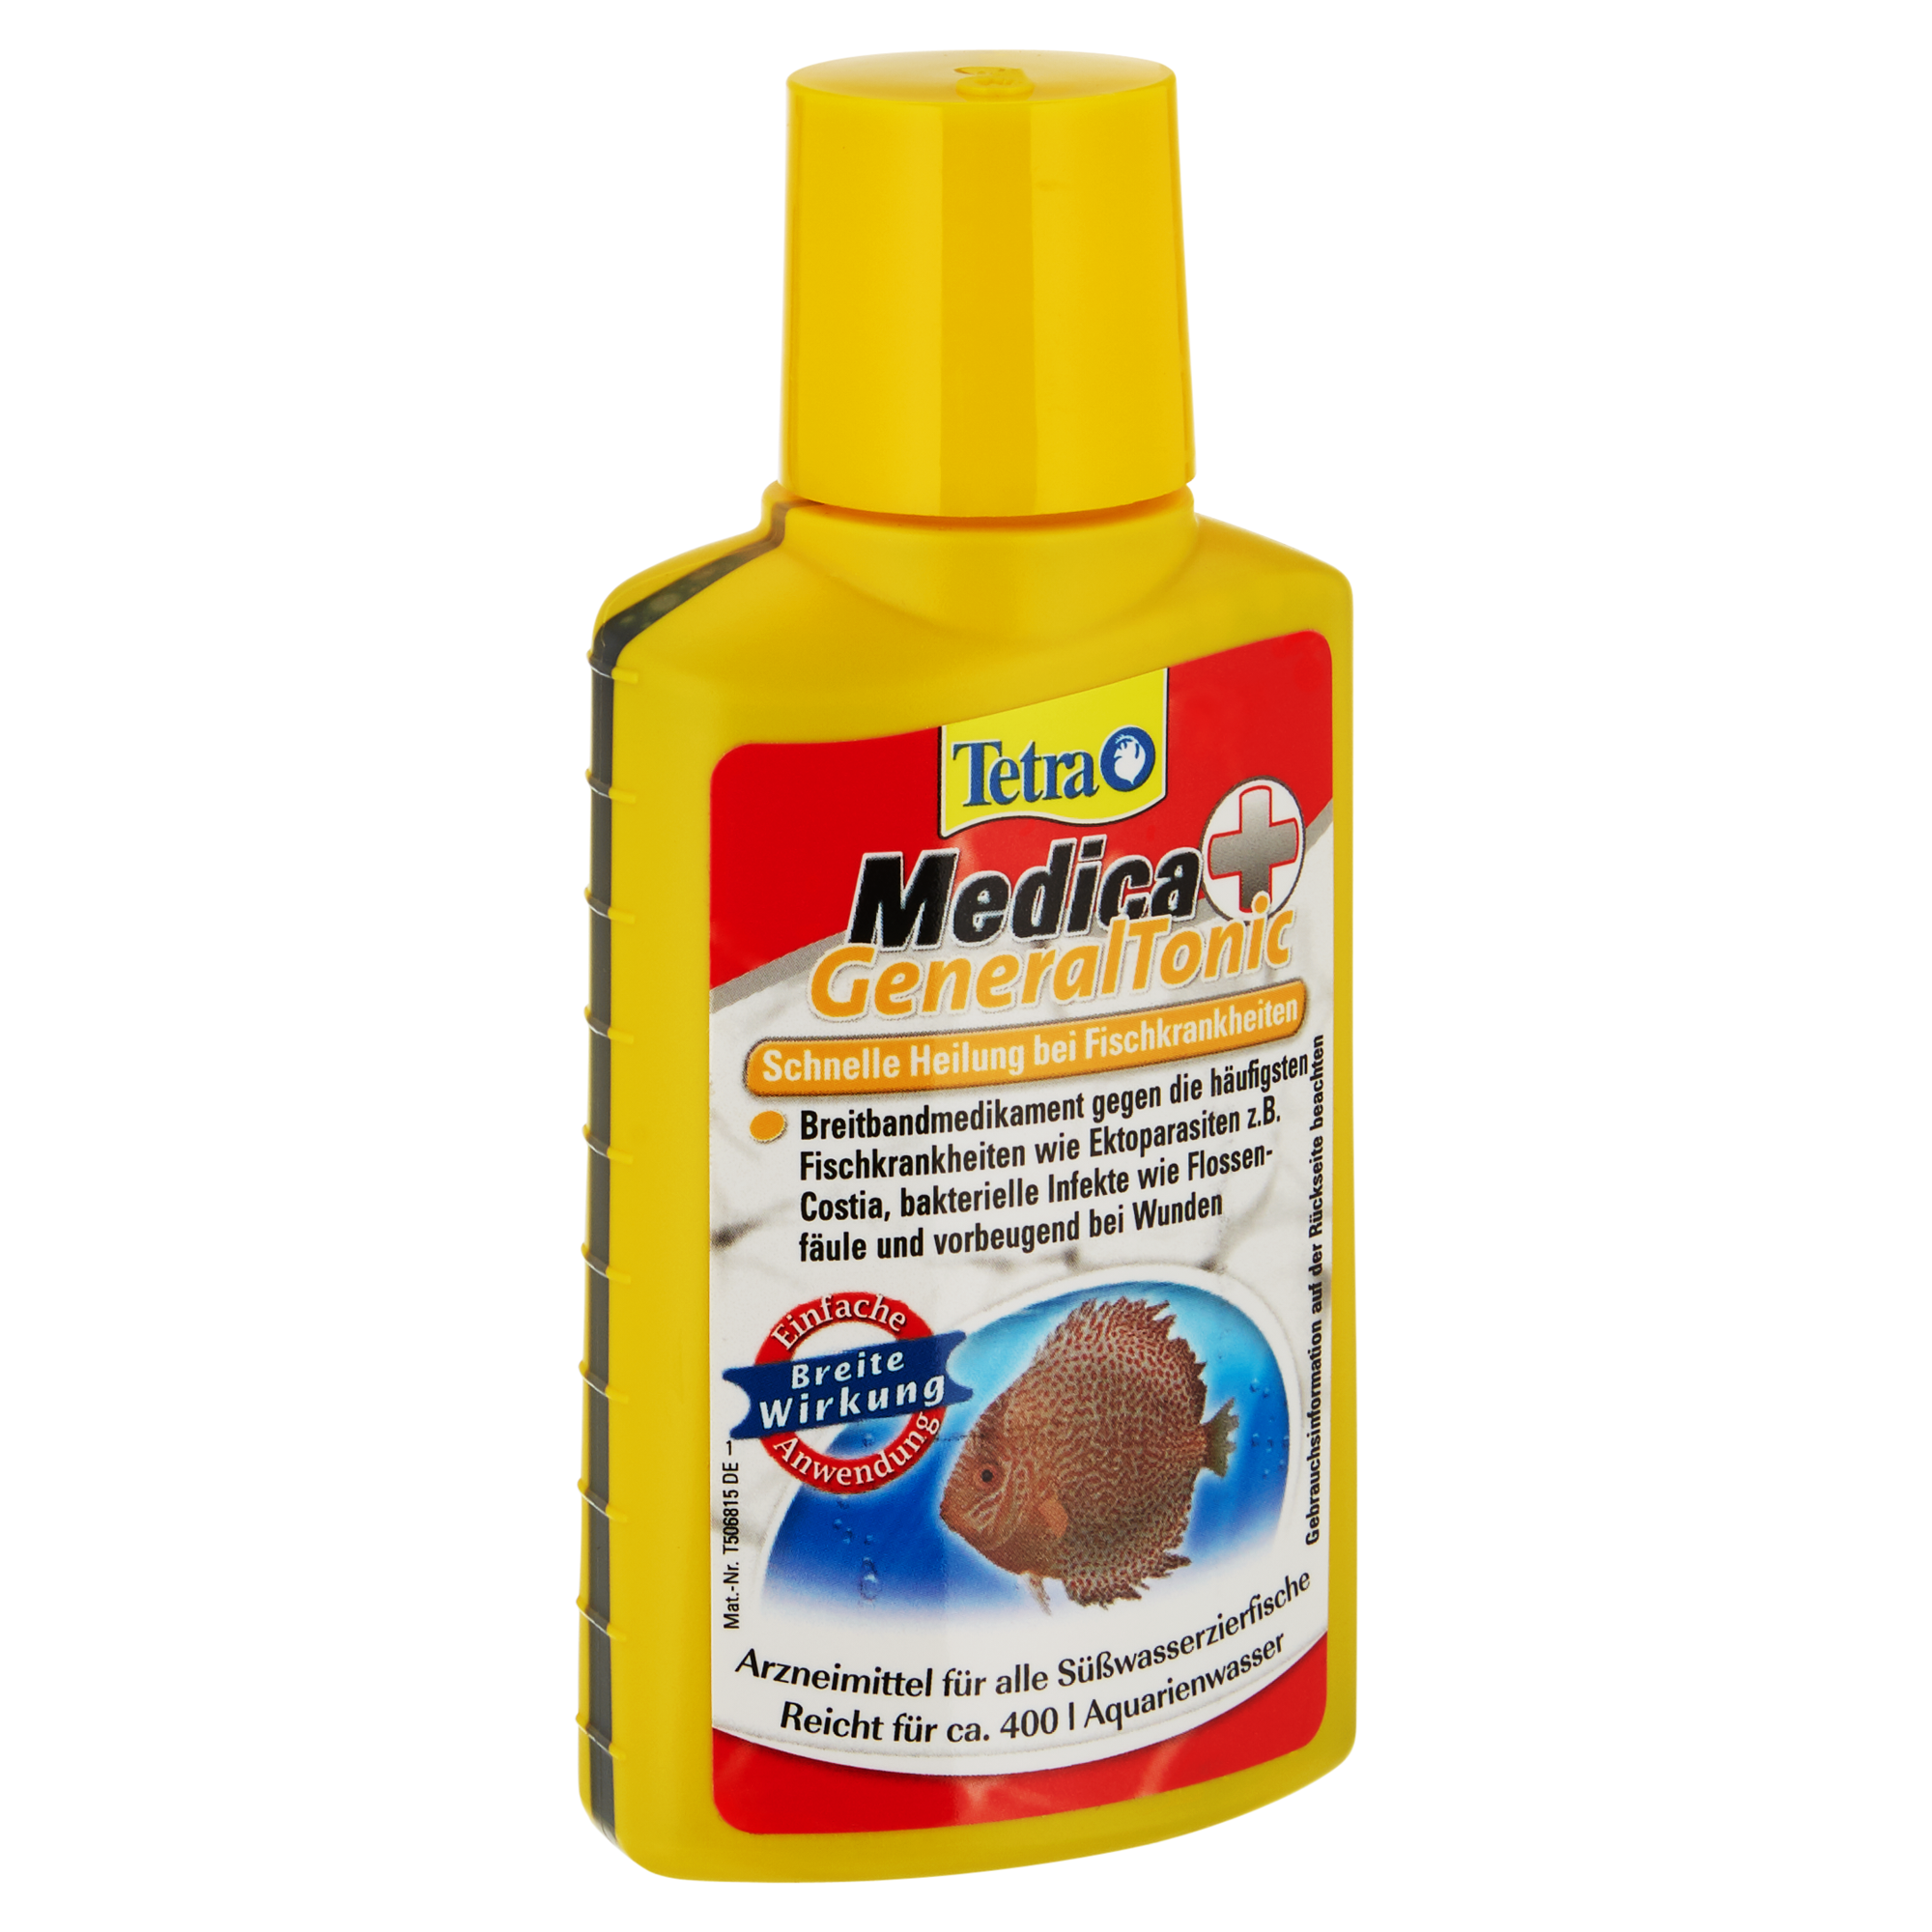 Fischarzneimittel "Medica" GeneralTonic 100 ml + product picture